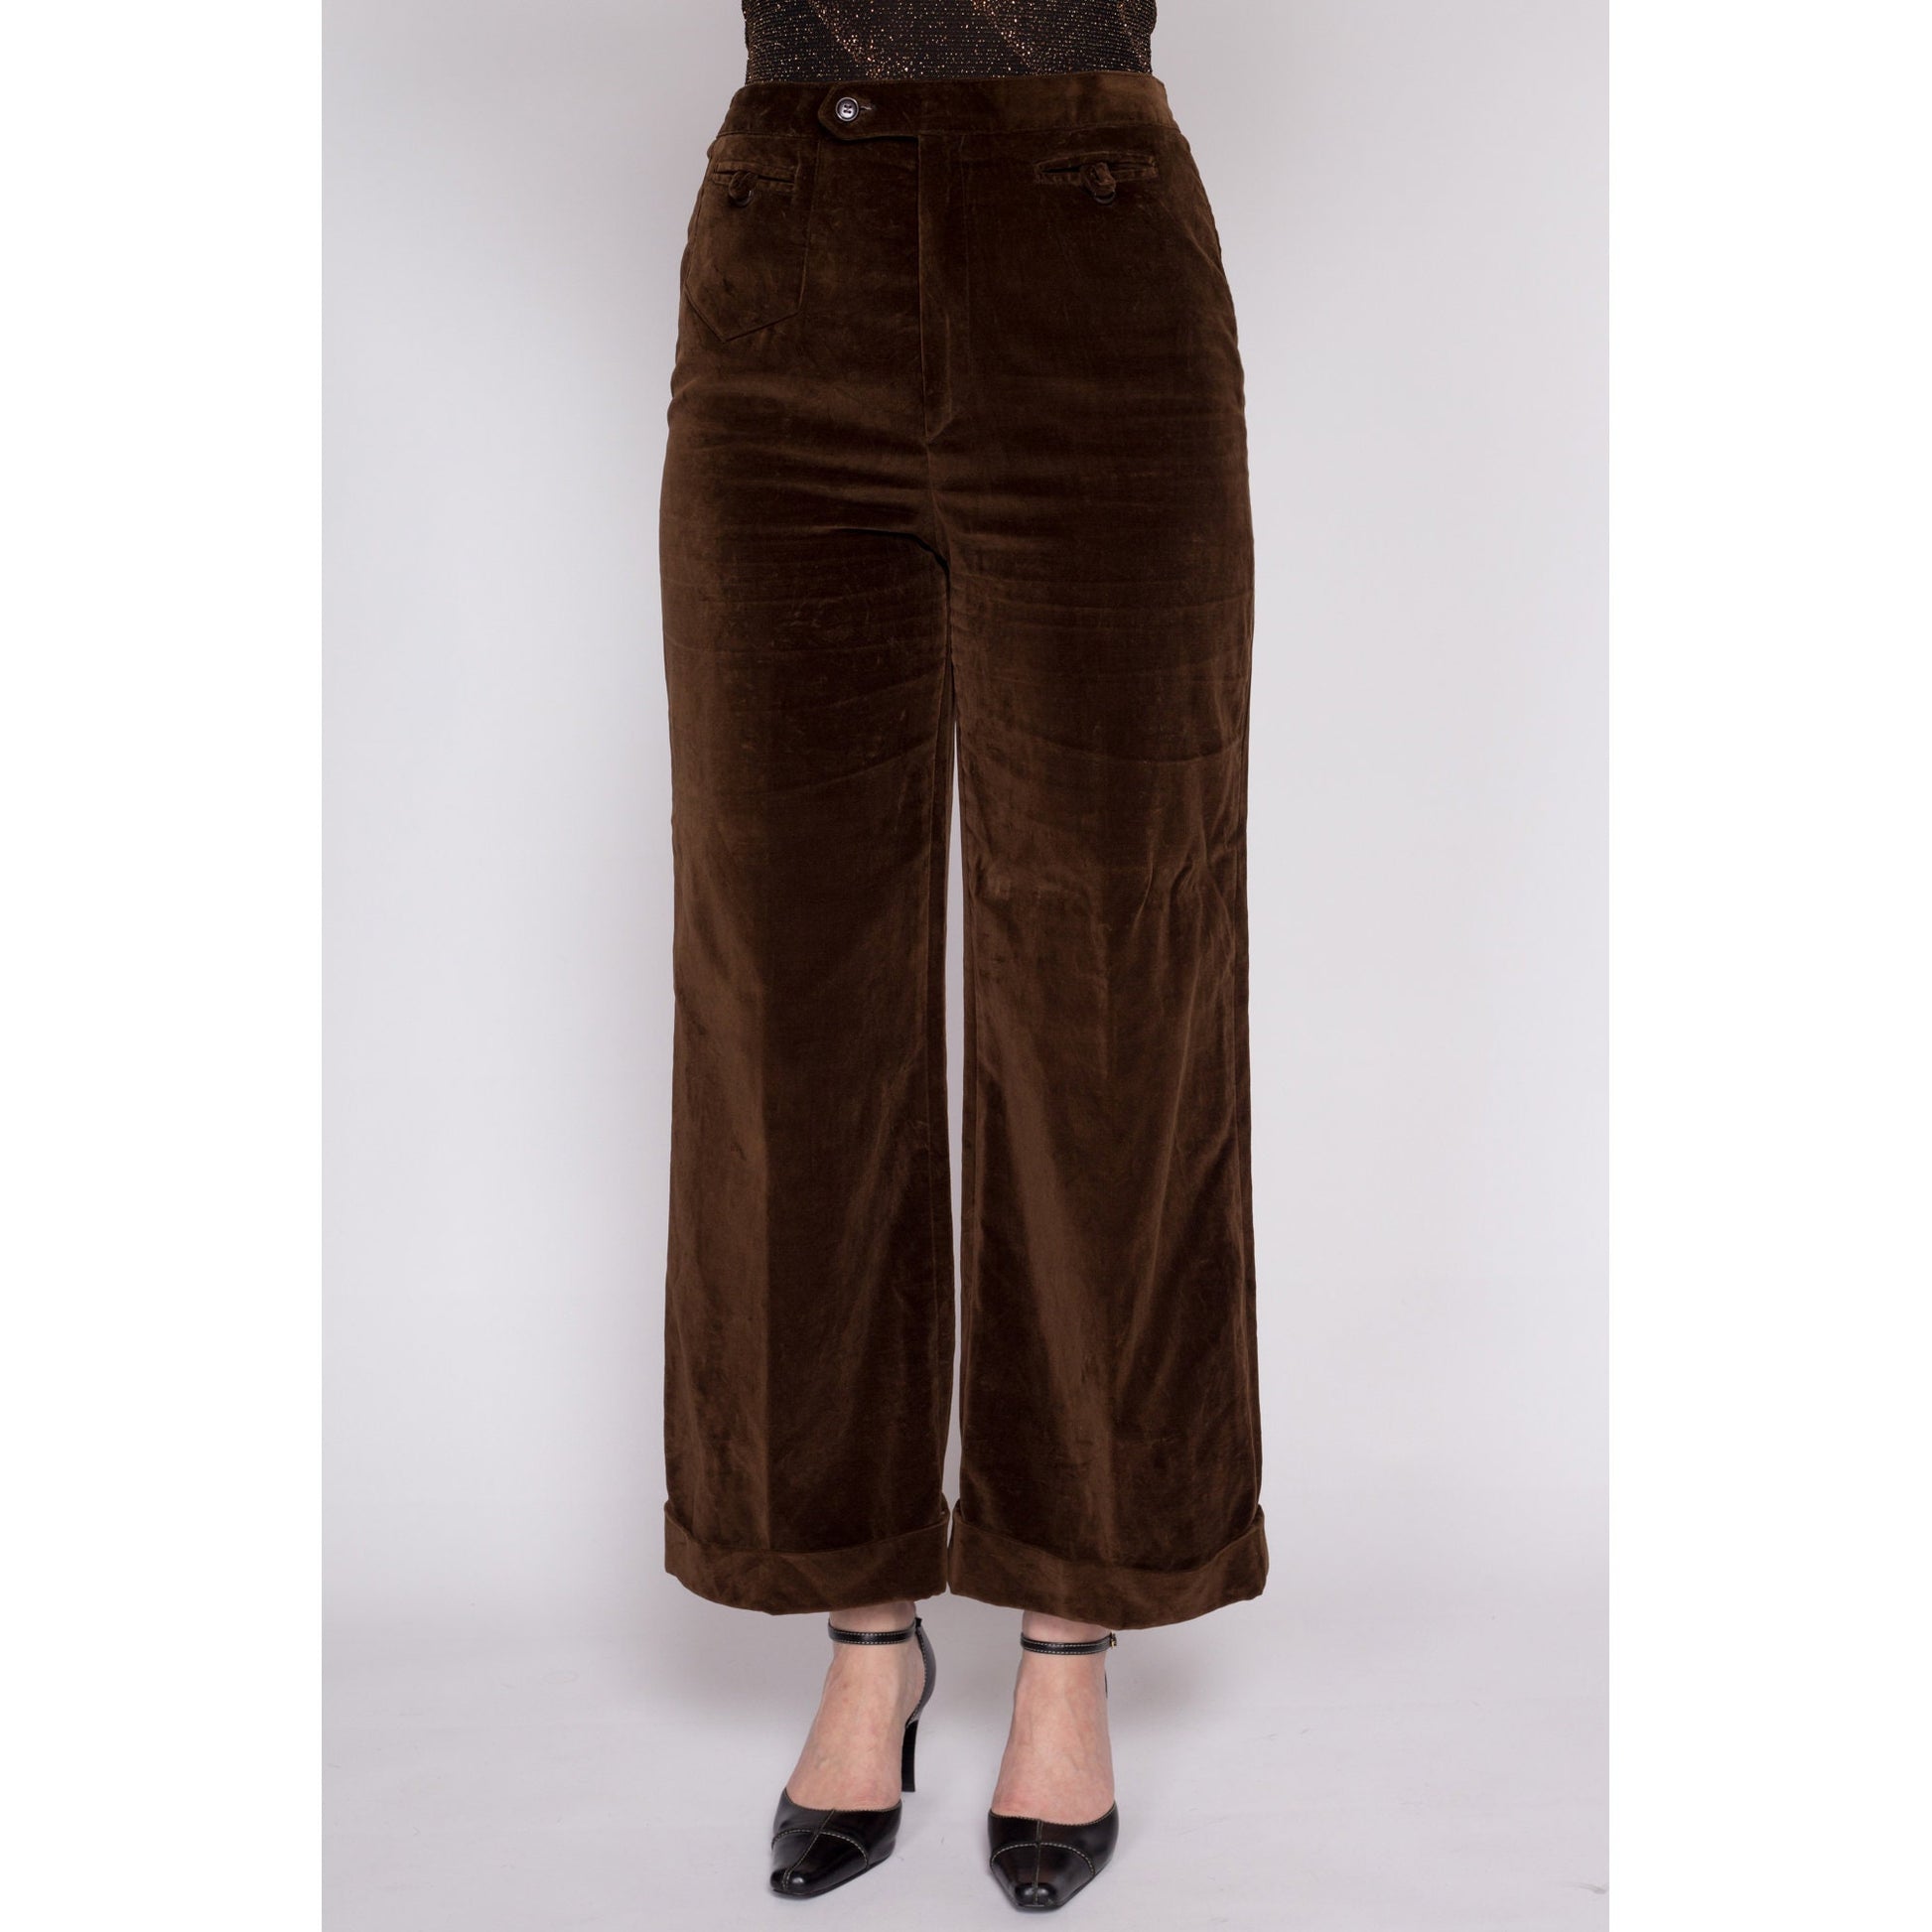 70s Chocolate Brown Velvet Pants - Medium, 28 – Flying Apple Vintage